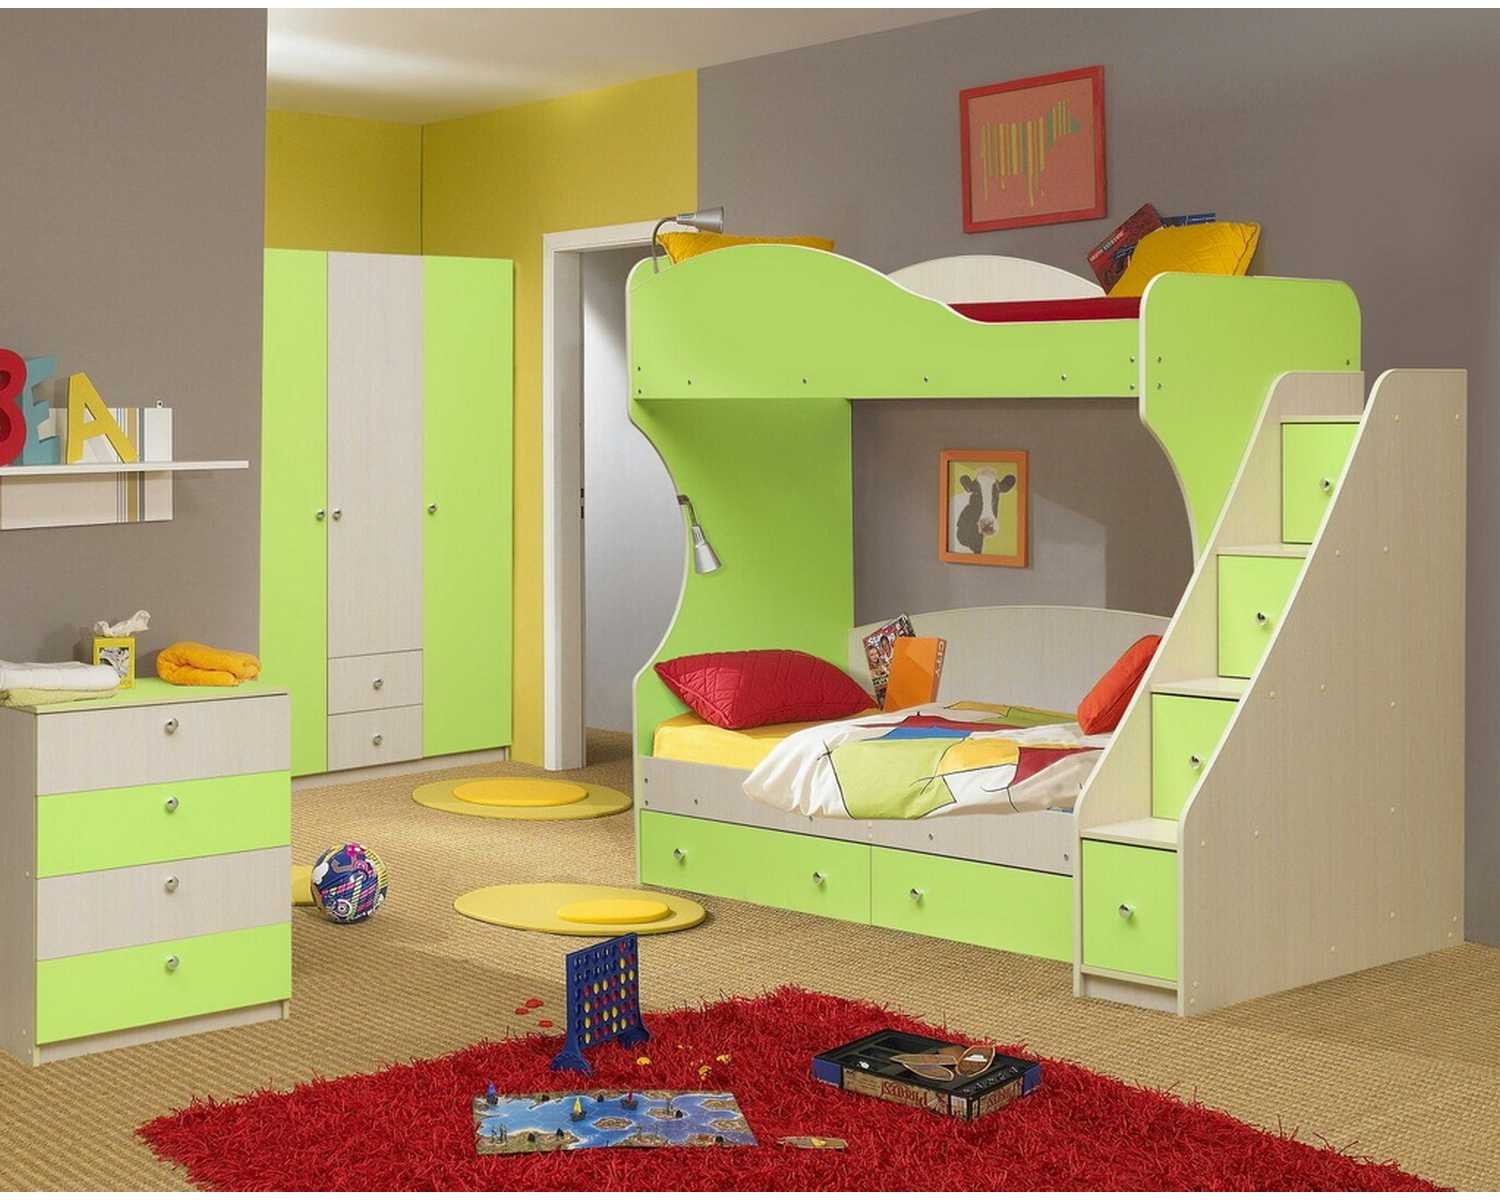 Купить детскую для двоих. Детские комнаты мебель. Детский спальный гарнитур. Детские комнаты с двухъярусными кроватями. Мебель для детских комнат.